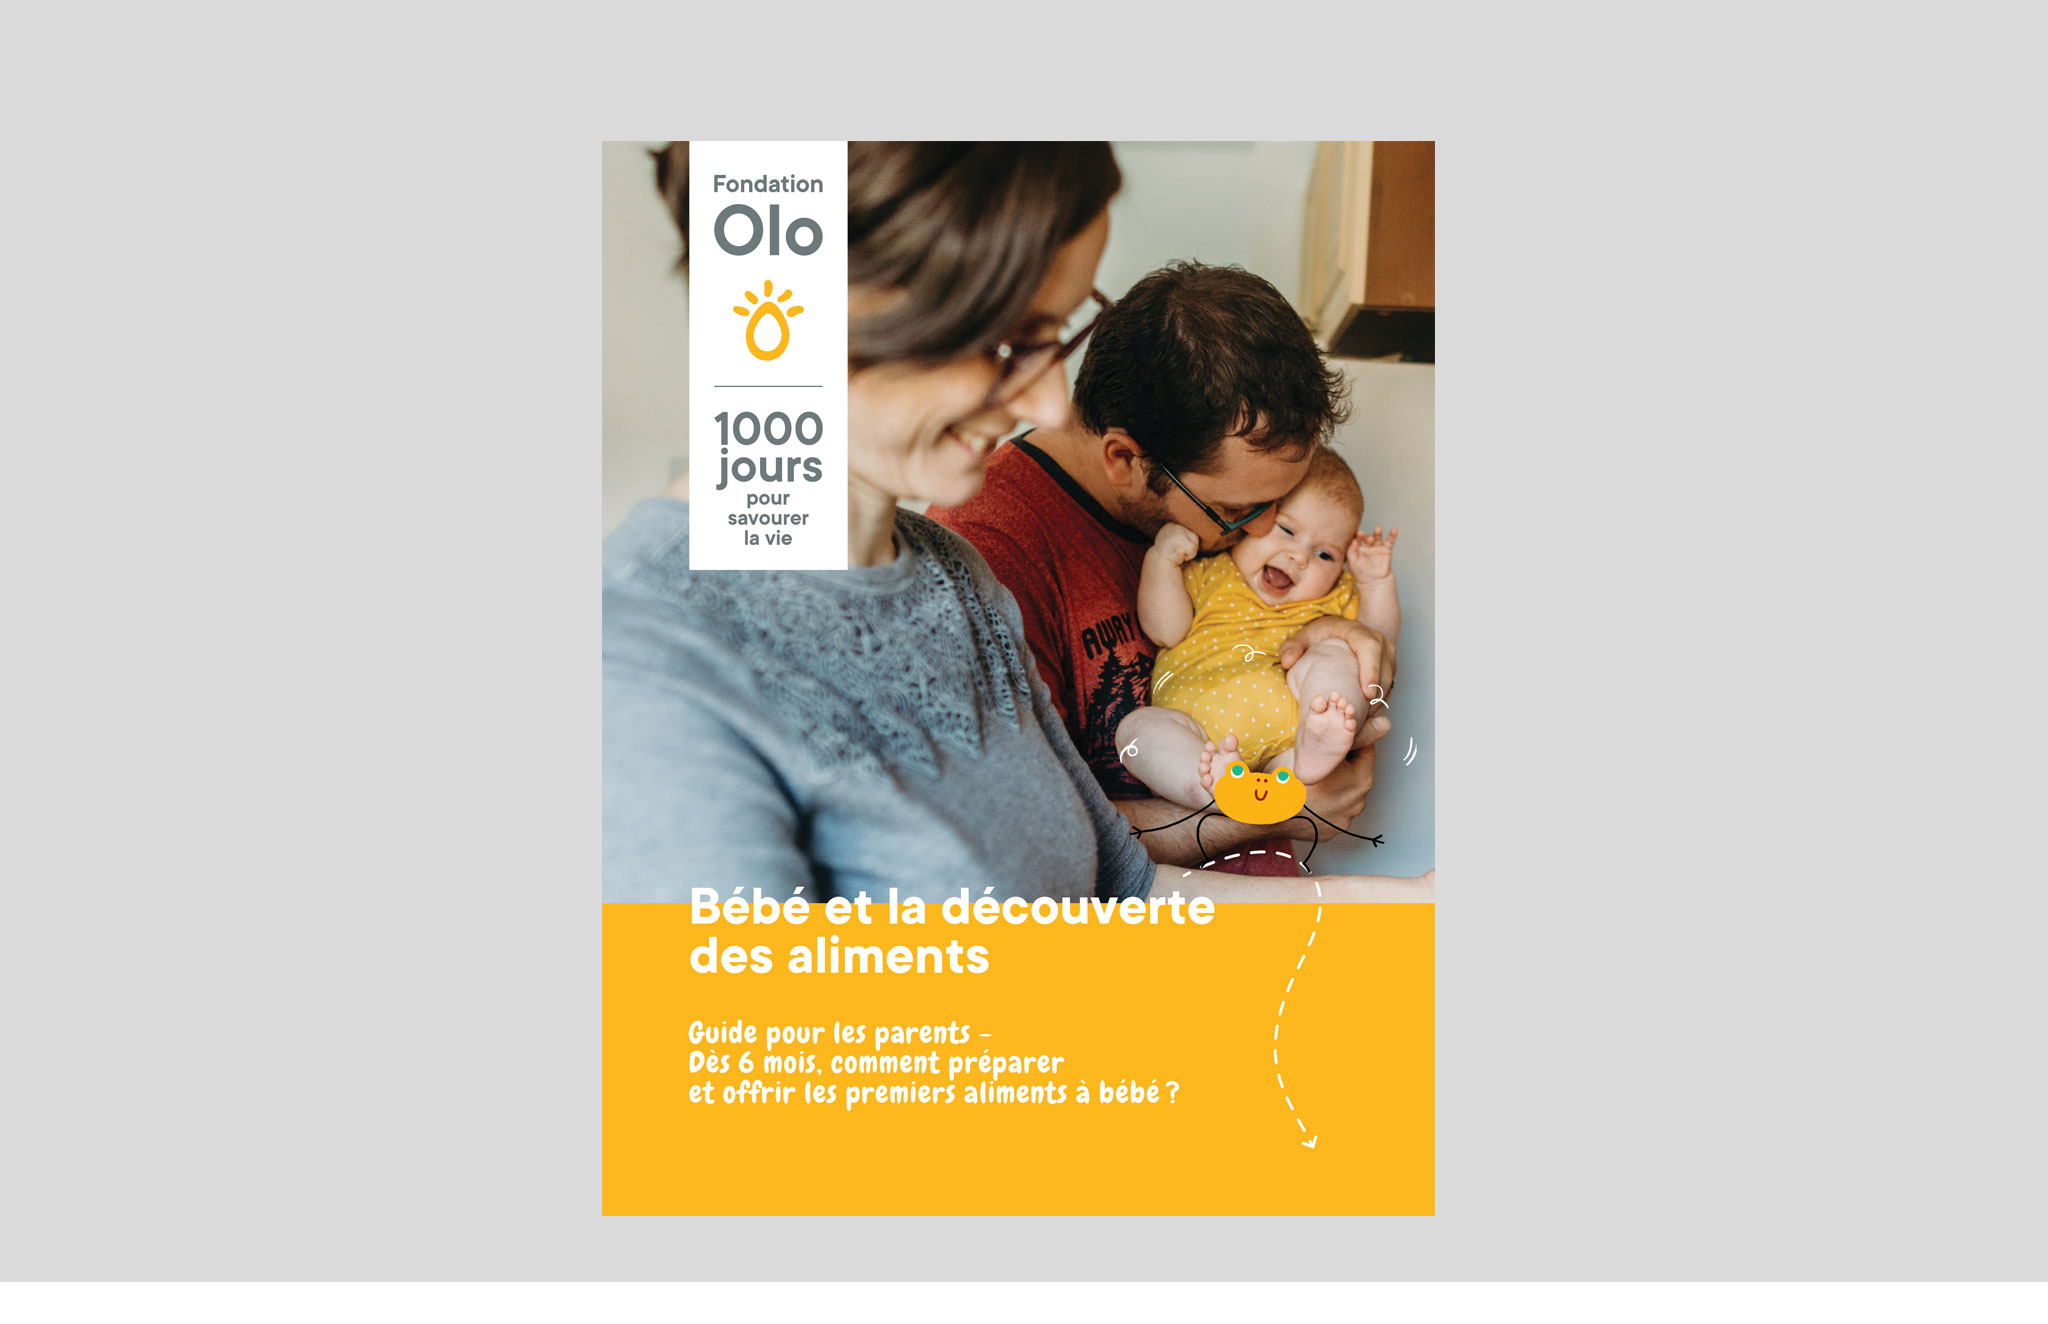 Fondation Olo outils de communication du le programme 1000 jours pour savourer la vie.